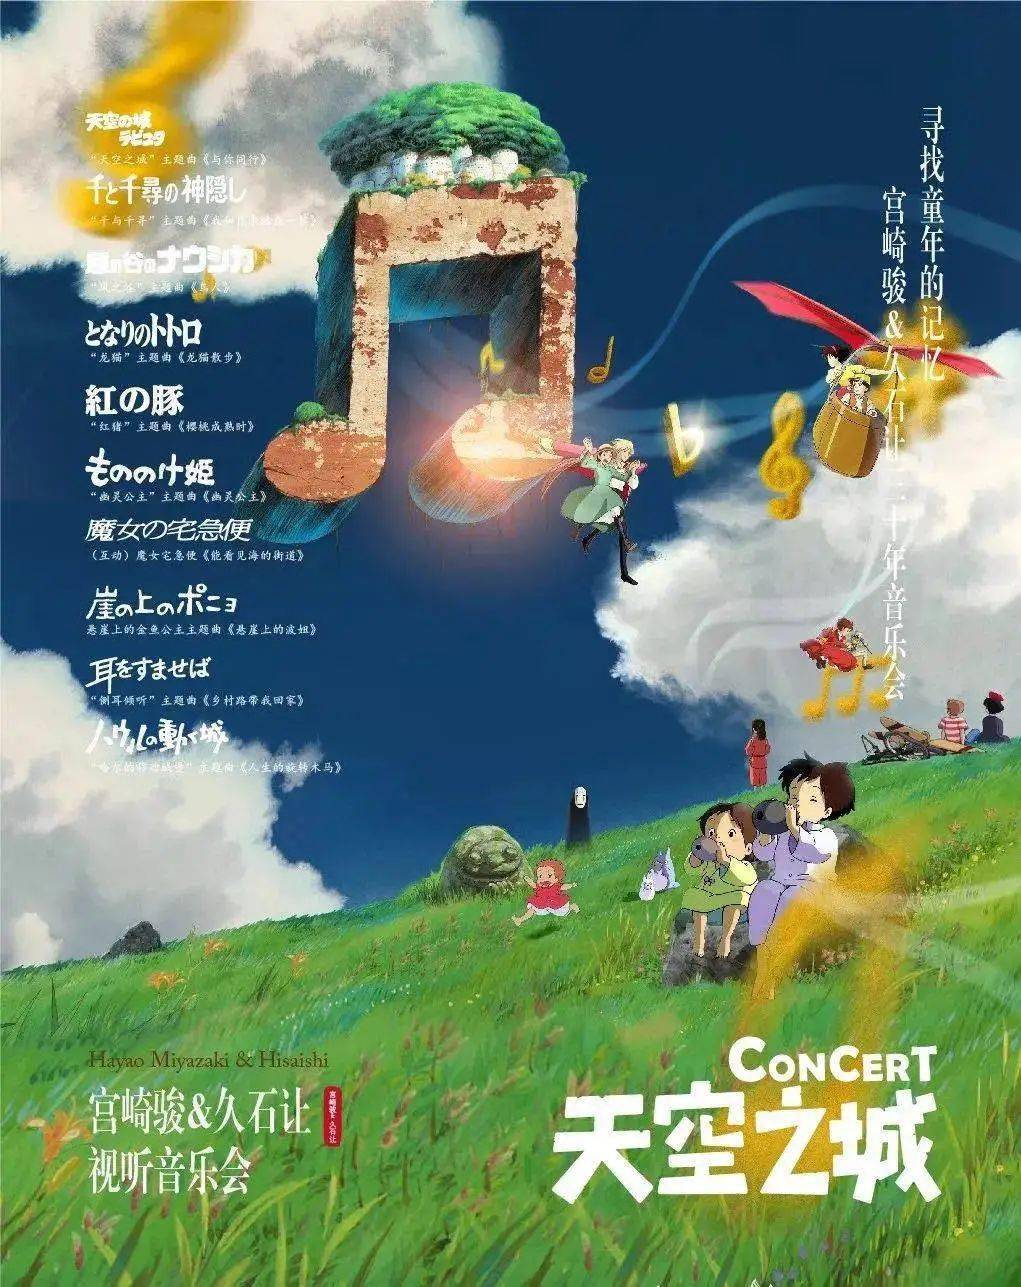 《天空之城-宫崎骏&久石让视听音乐会》